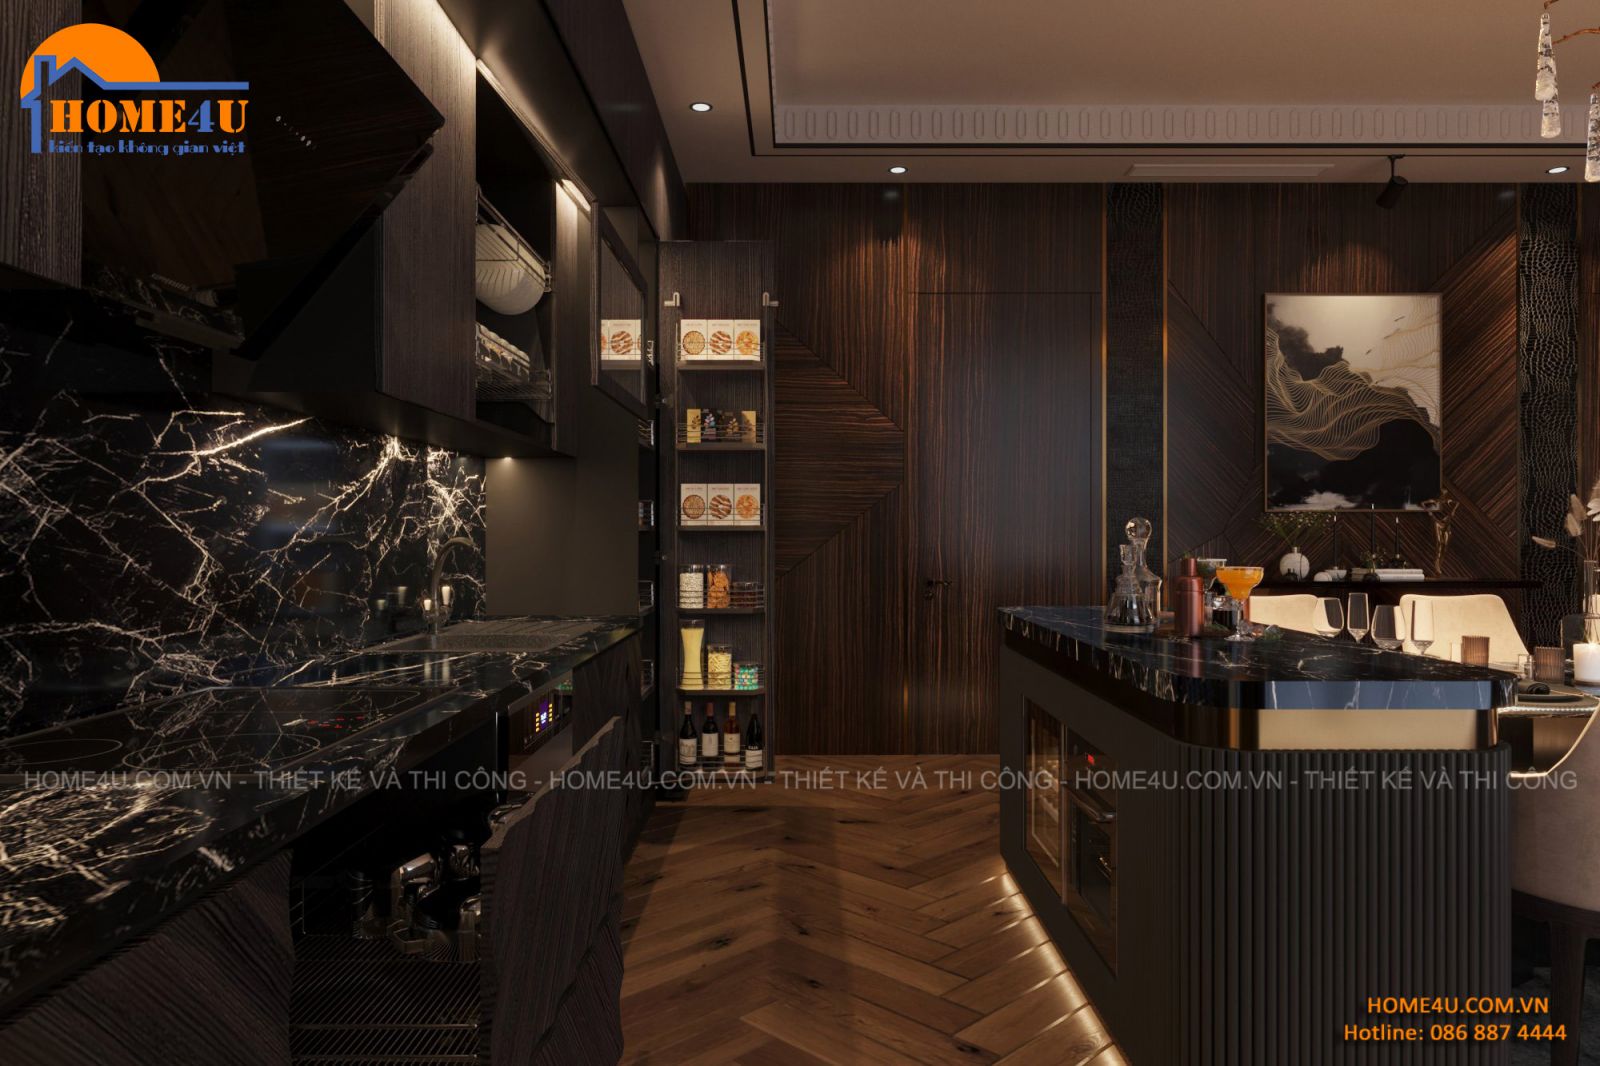 Thiết kế nội thất nhà phố 7 tầng hiện đại anh Tuấn - NTNP2013 4